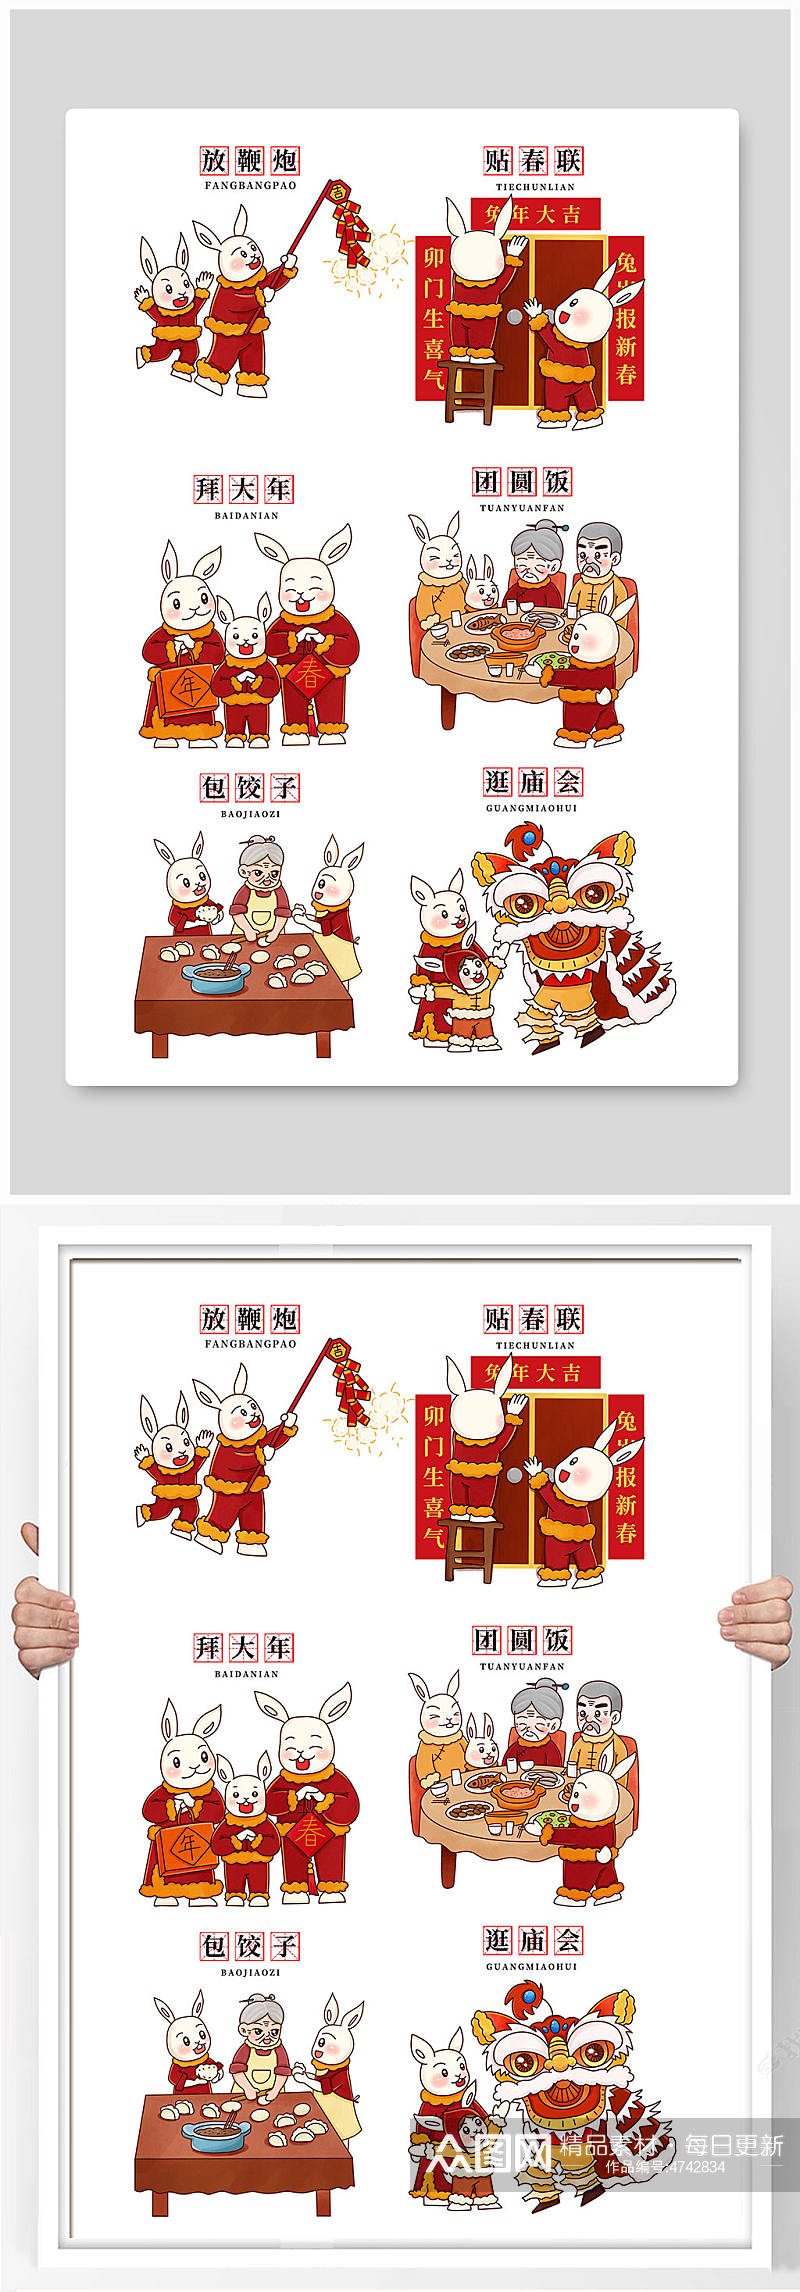 卡通手绘中国年俗兔年人物元素素材